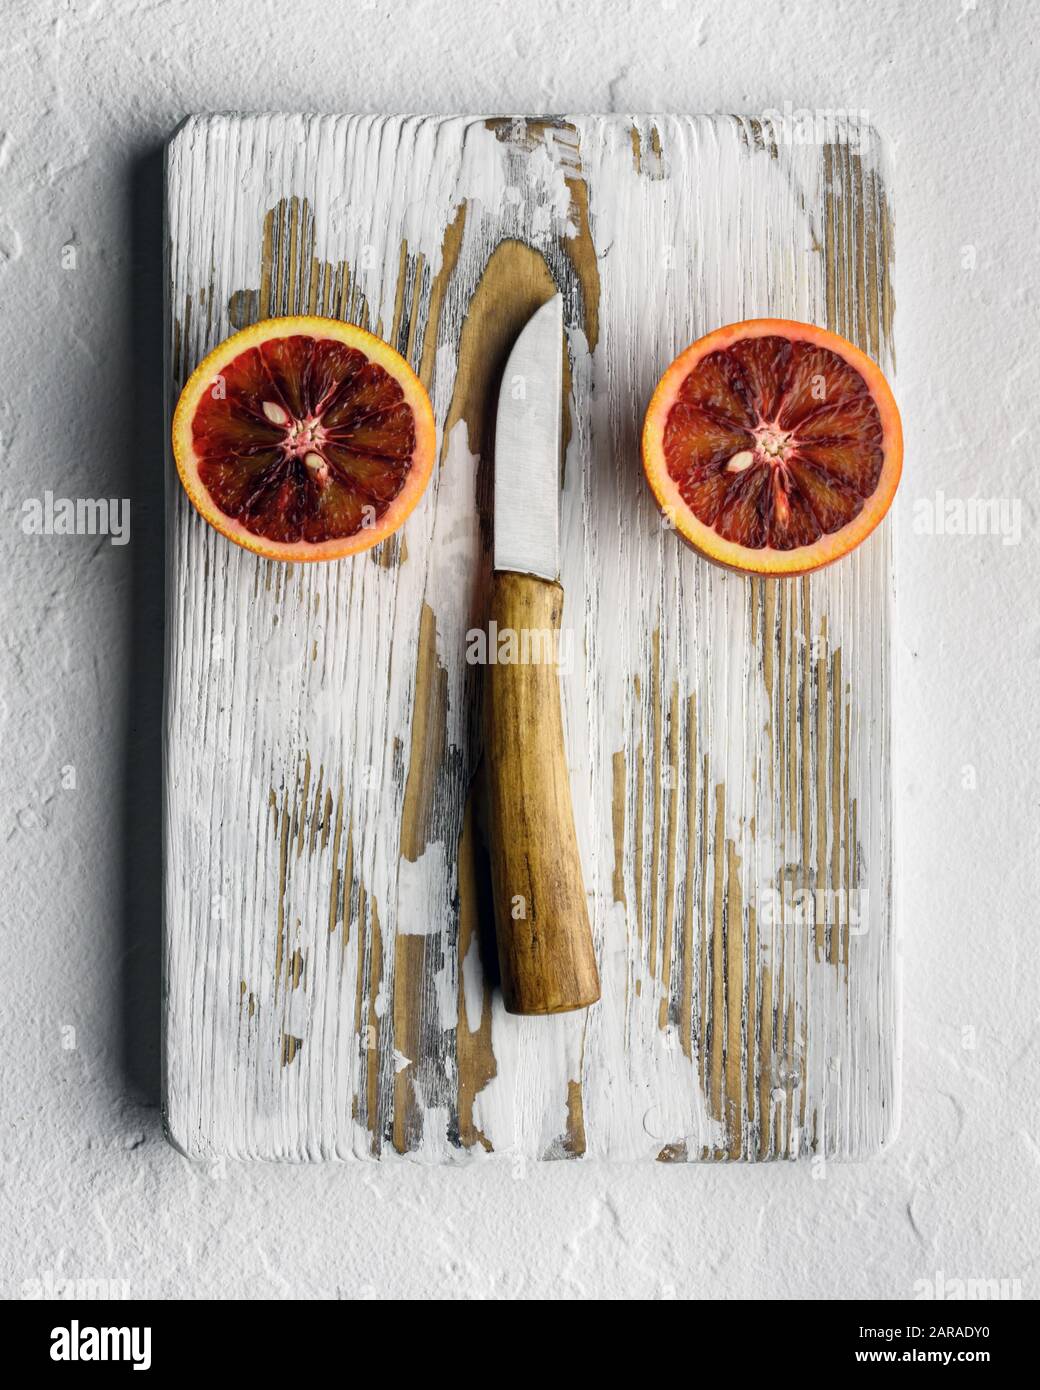 Semi pezzi arancioni con coltello su pannello di legno bianco primo piano. Dieta sana concetto di vitamina. Fotografia di cibo Foto Stock